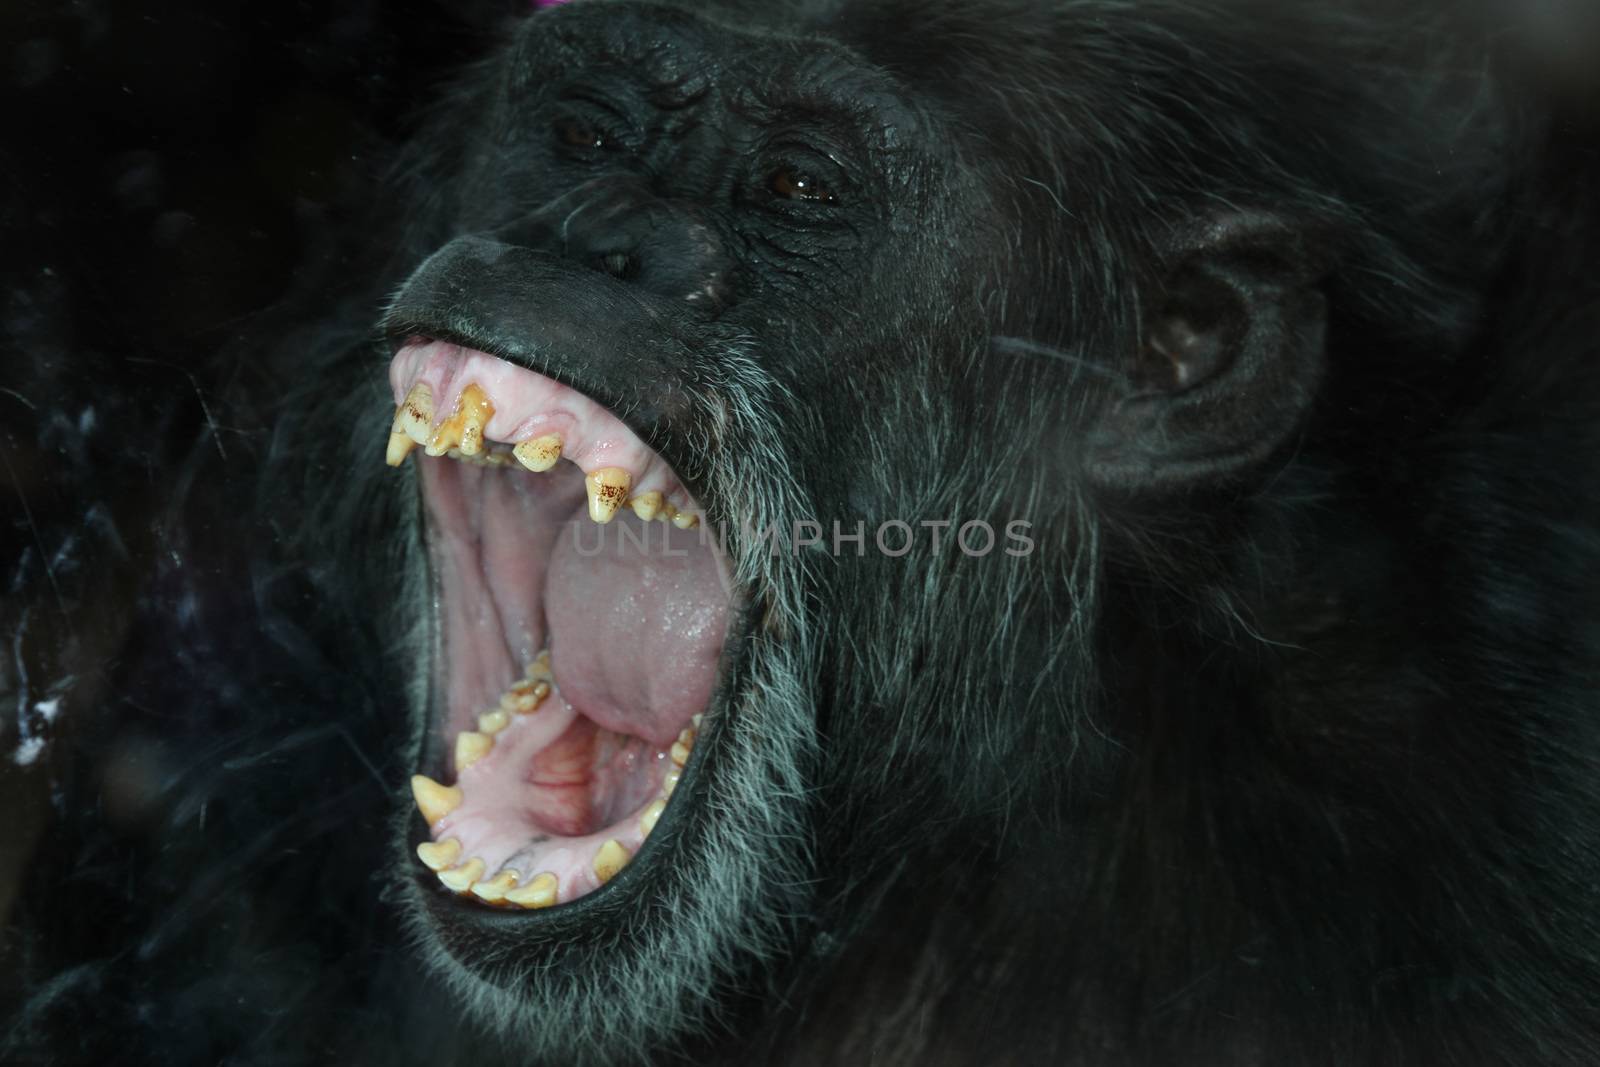 Chimpanzee close up portrait